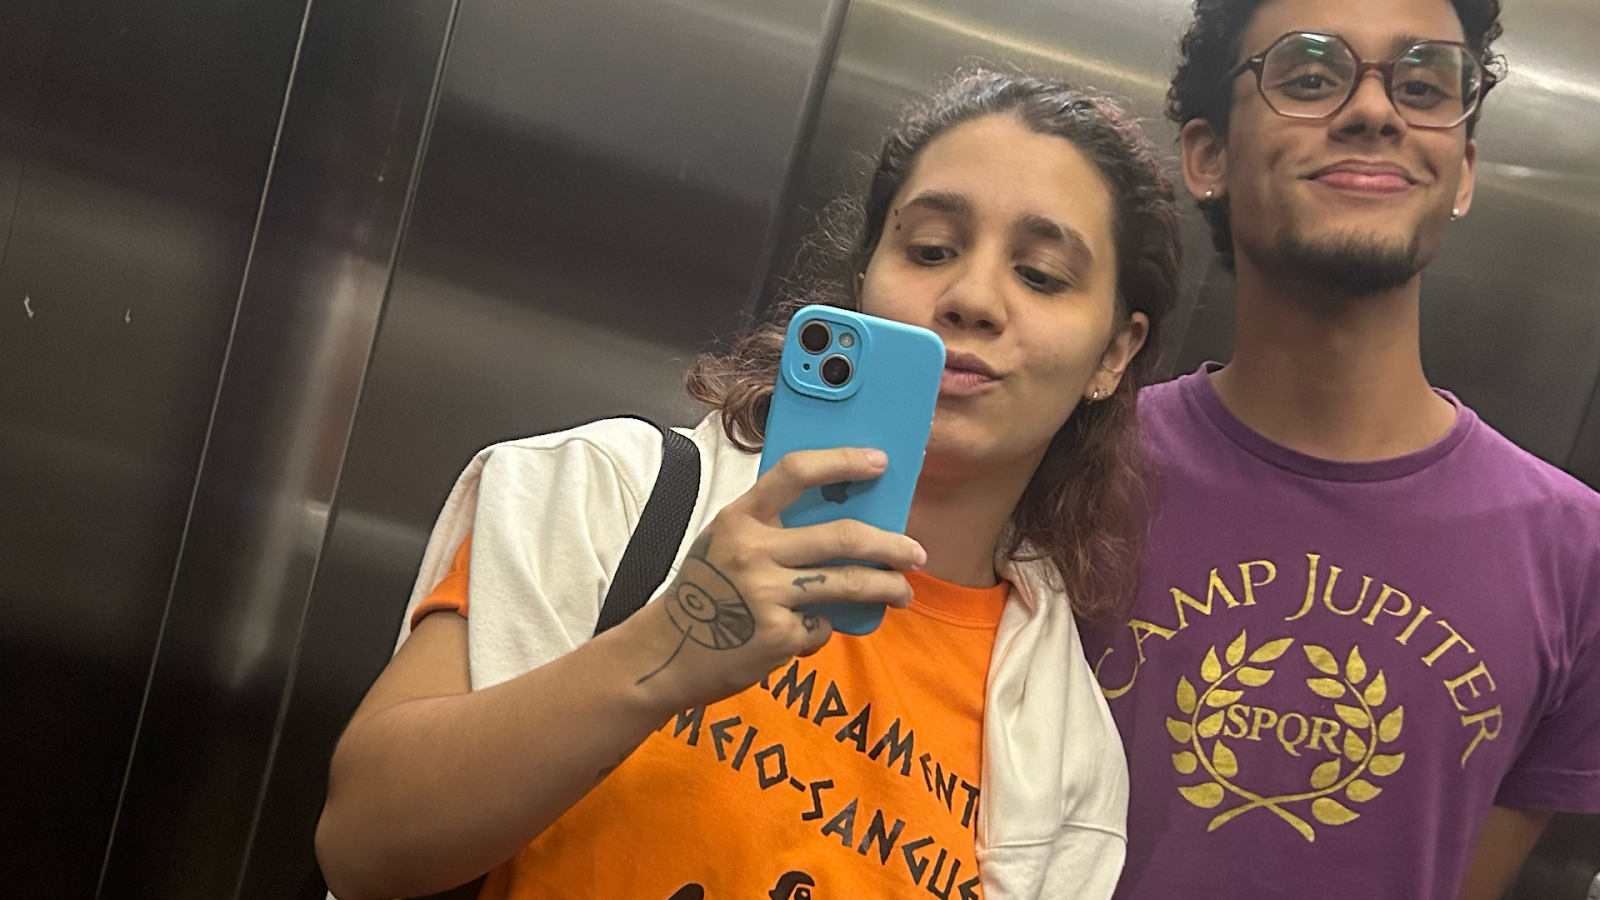 Iana Maciel, quem vos escreve, com a camiseta laranja do Acampamento Meio-Sangue, ao lado de seu amigo Victor Roldão, utilizando o uniforme roxo do Acampamento Júpiter. Fotografia retirada em um espelho de elevador.